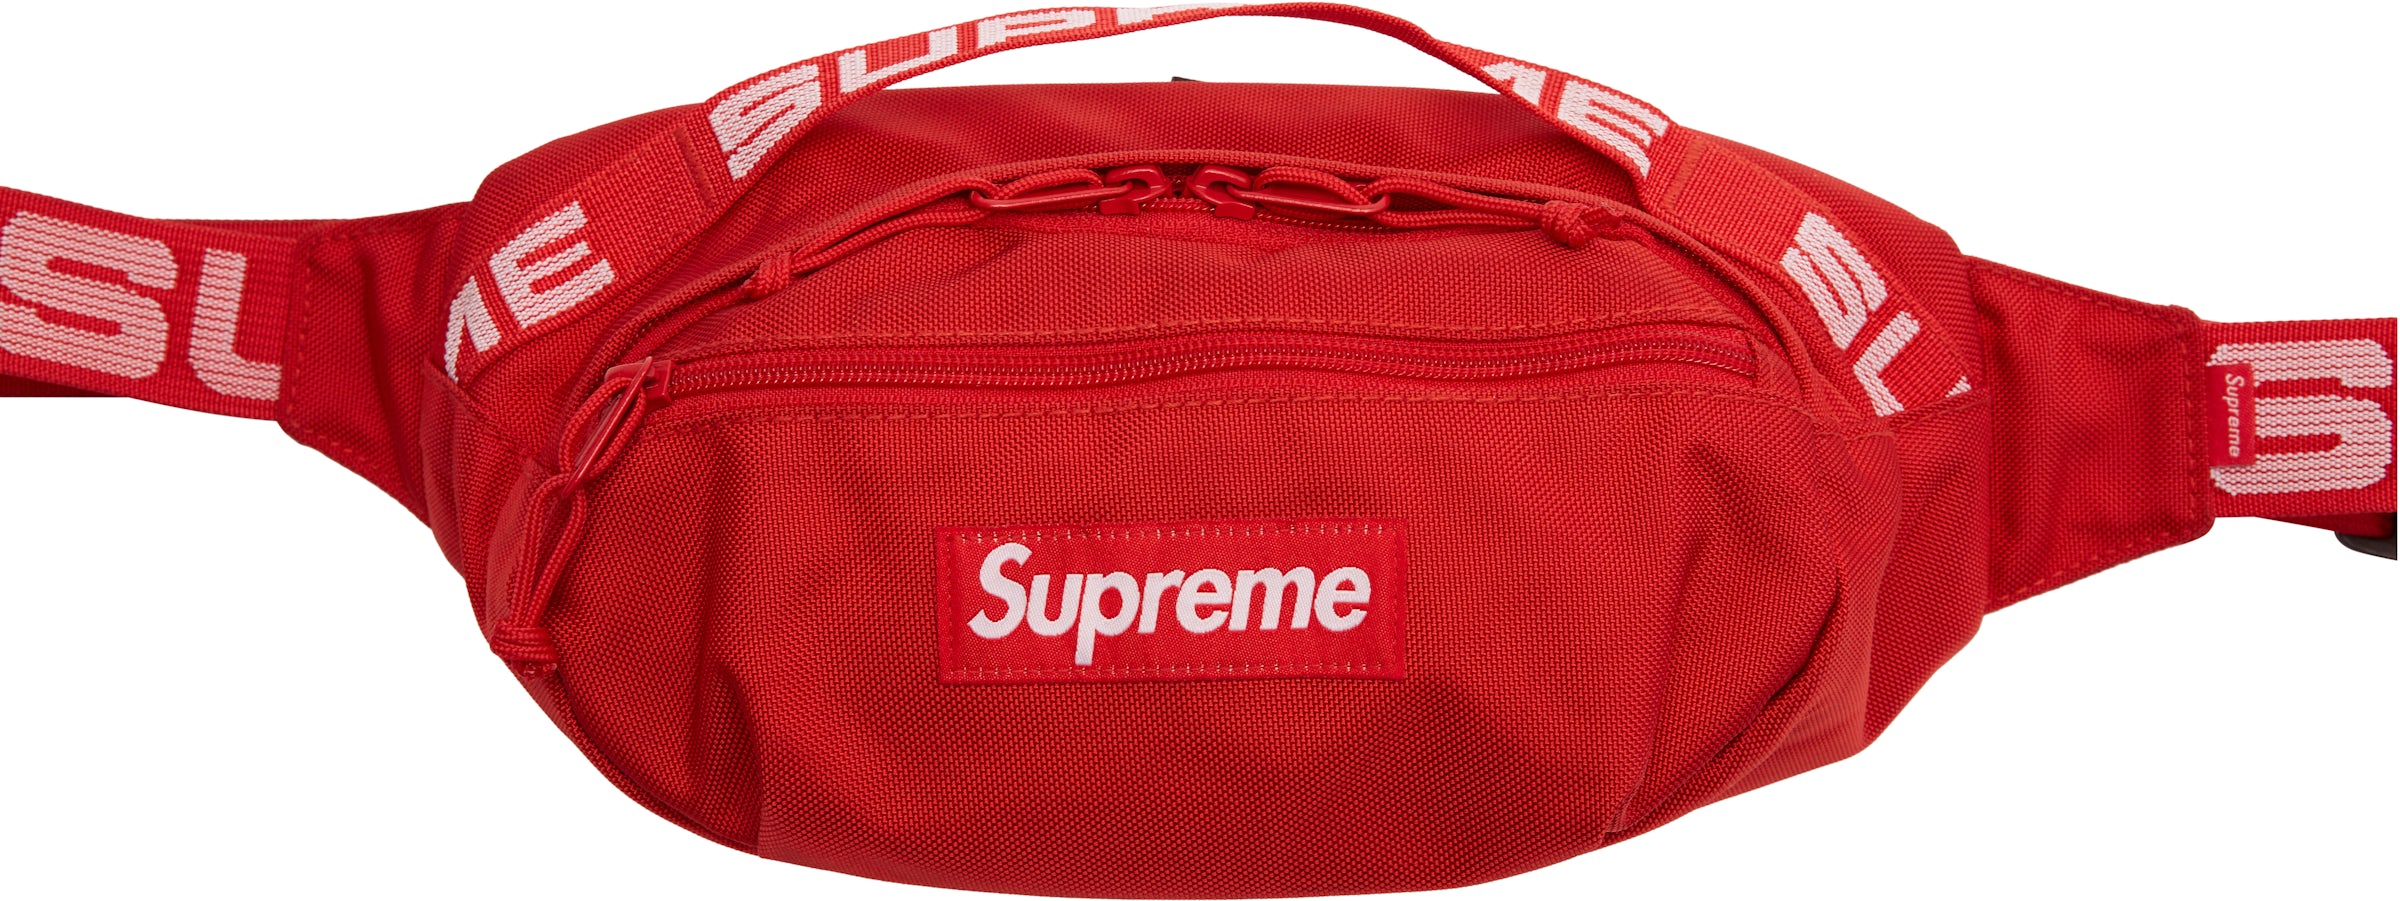 supreme waist bag on body